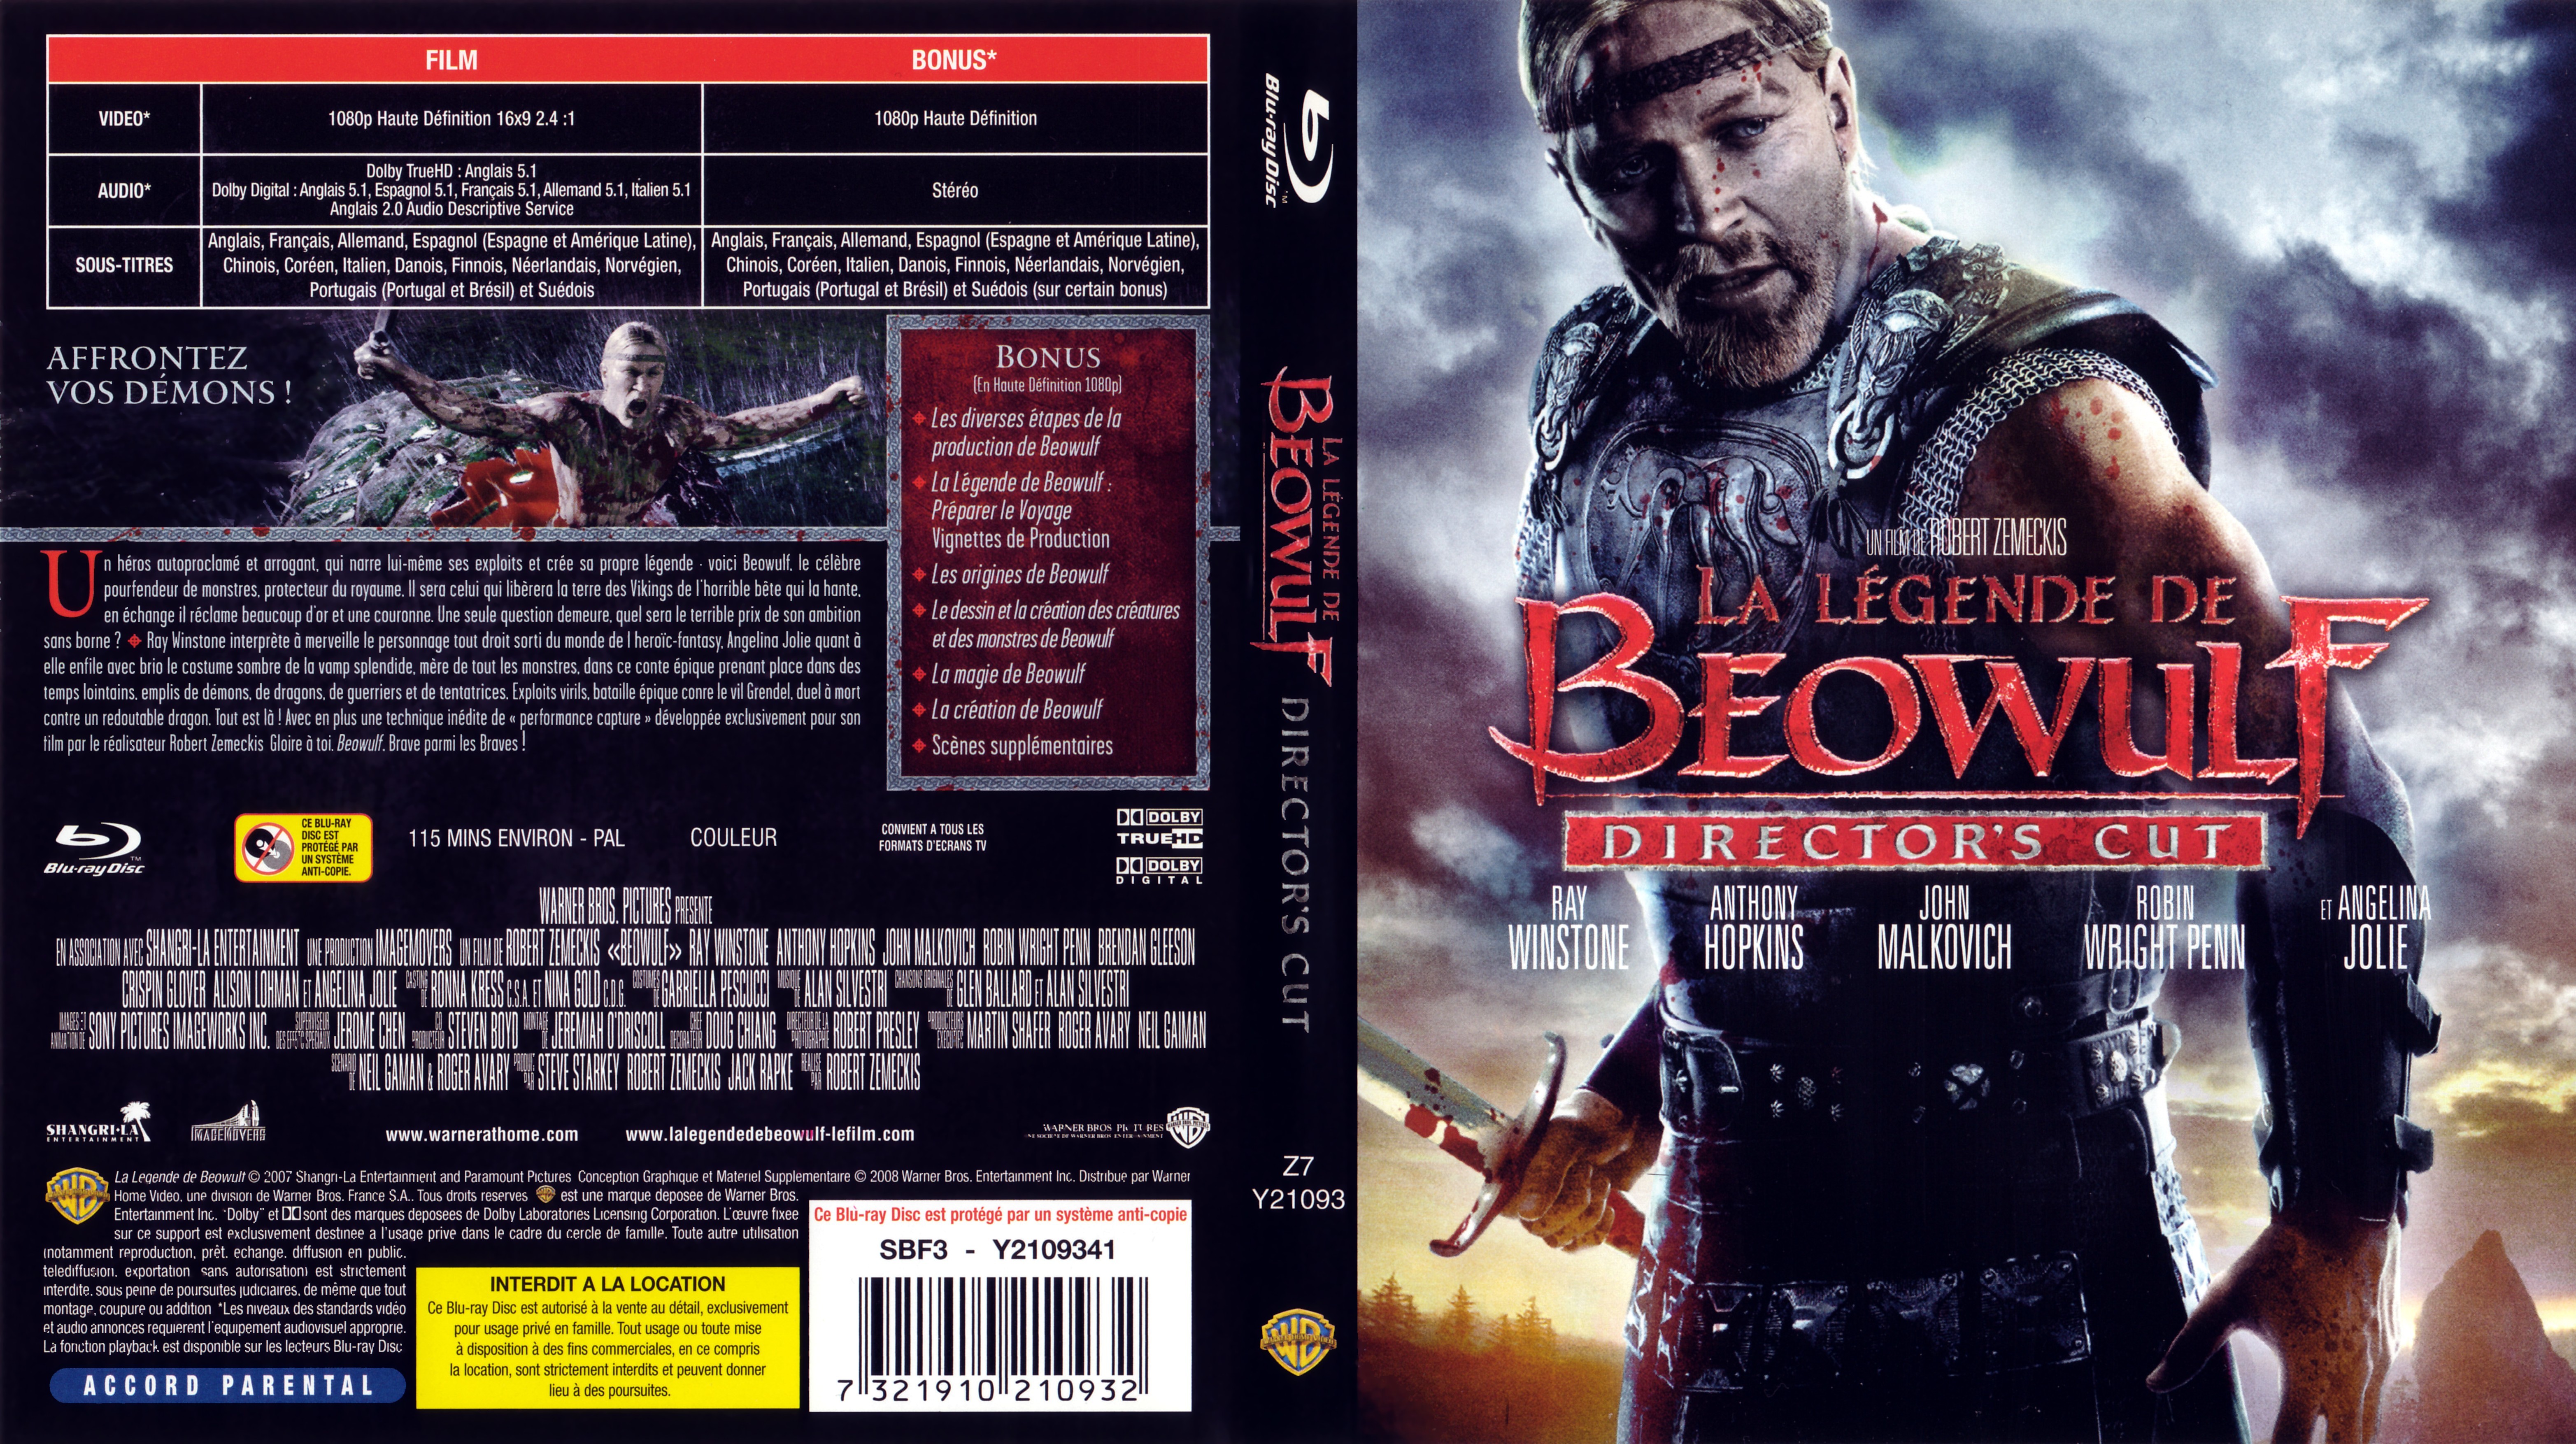 Jaquette DVD La legende de Beowulf (BLU-RAY)